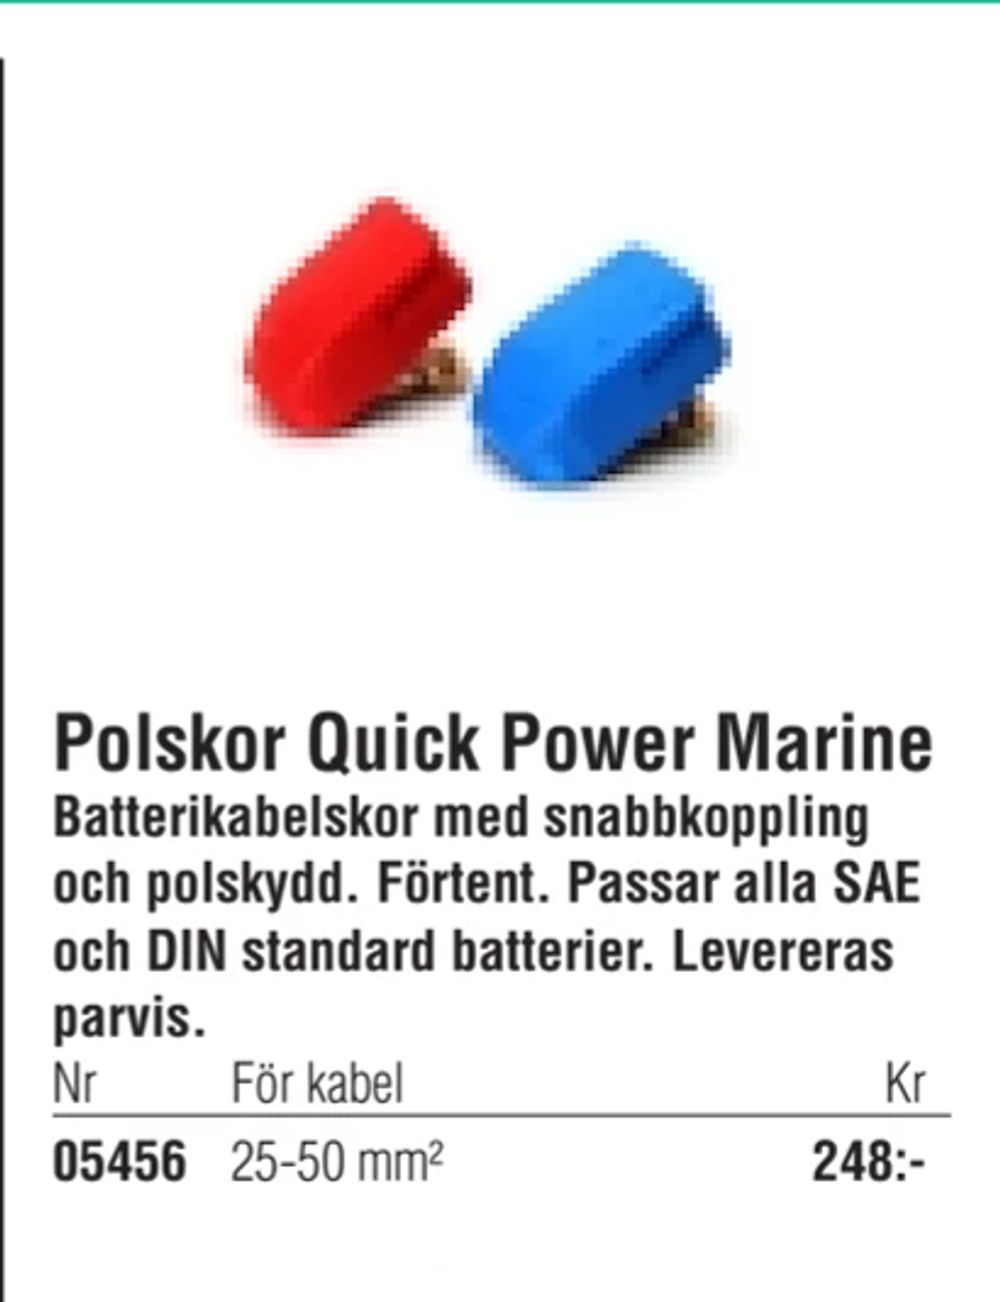 Erbjudanden på Polskor Quick Power Marine från Erlandsons Brygga för 248 kr